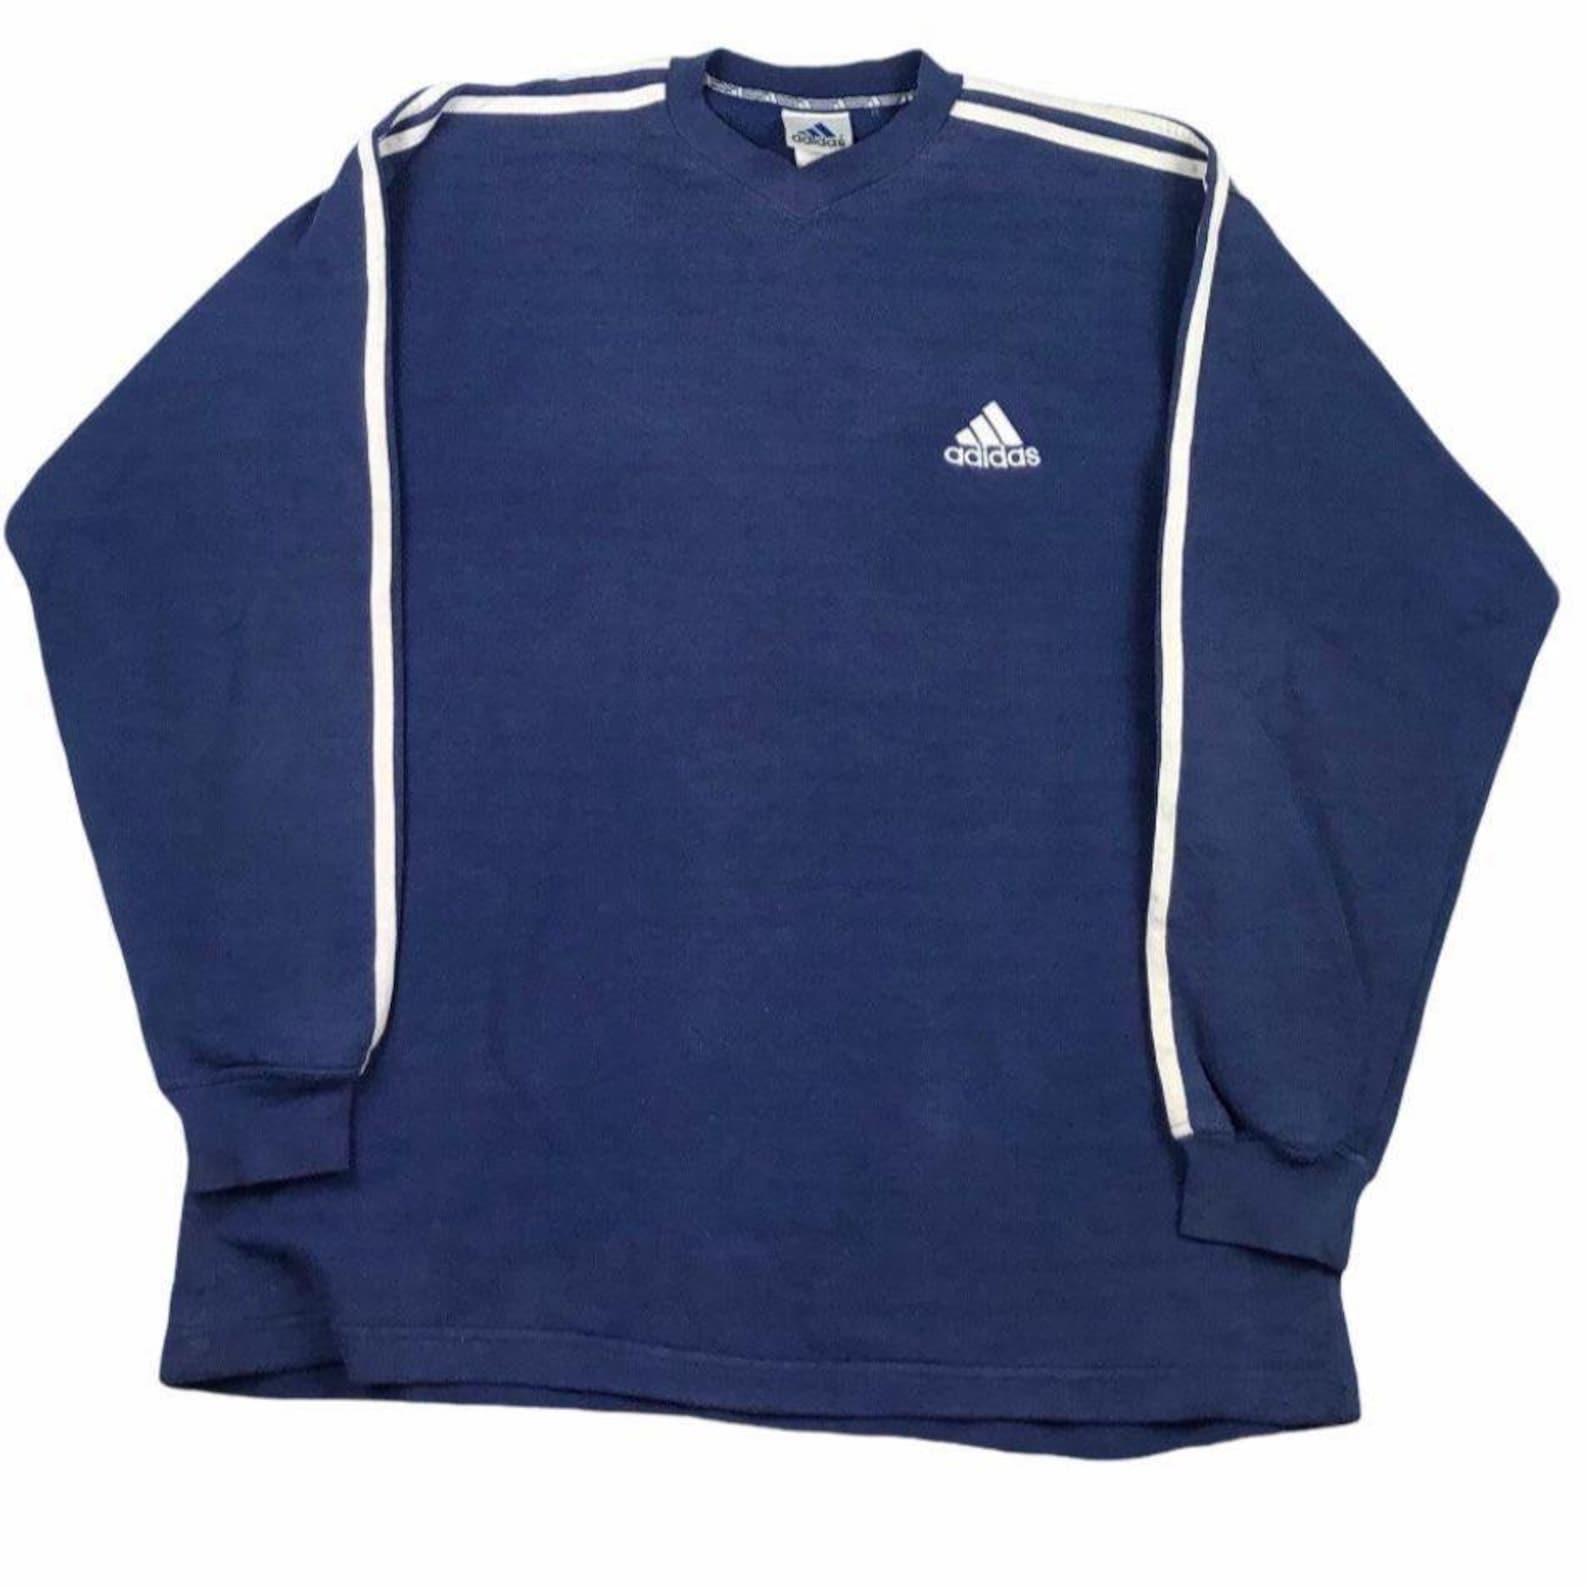 Vintage 90s Adidas sweatshirt | Etsy